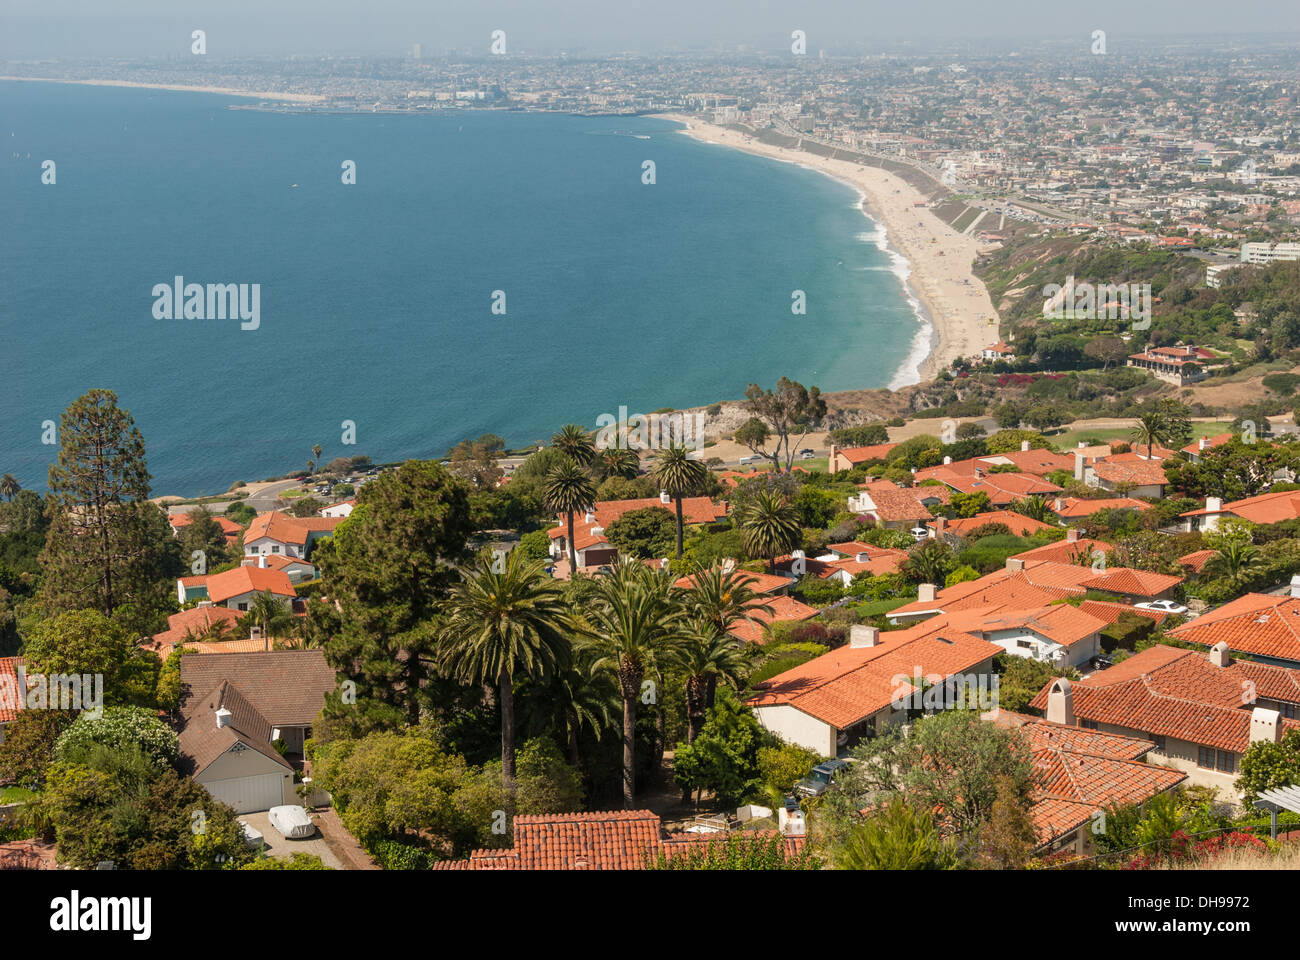 Vue panoramique depuis Rancho Palos Verdes de l'océan Pacifique avec Torrance, Redondo, Hermosa et Los Angeles, Californie en arrière-plan. (ÉTATS-UNIS) Banque D'Images